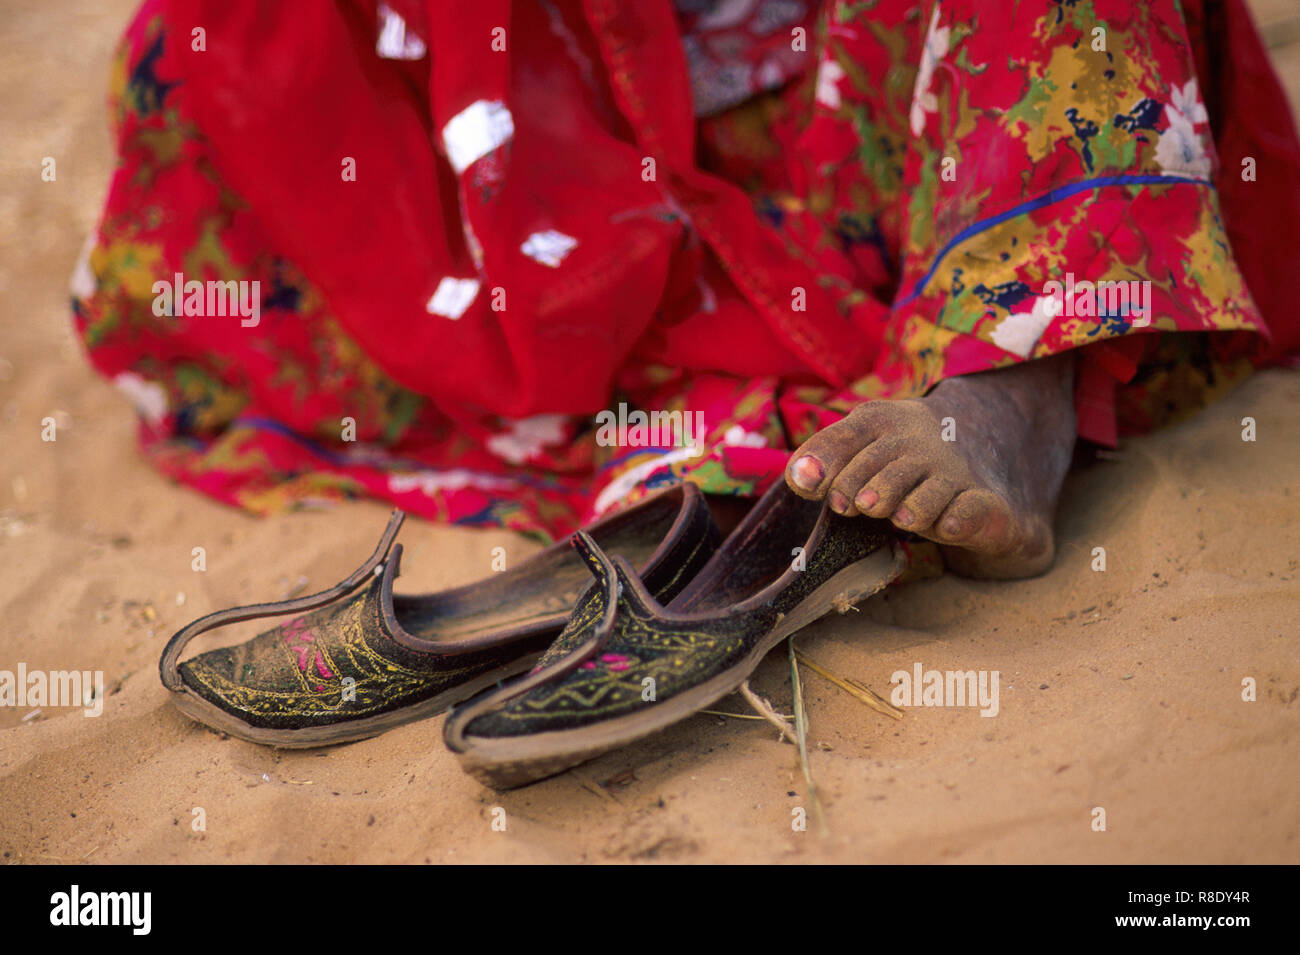 Ein Zigeuner indische Frau trägt einen roten Sari sitzt Barfuss im Sand  nach ihre Schuhe ausziehen, Wüste Thar, Pushkar, Rajasthan, Indien  Stockfotografie - Alamy